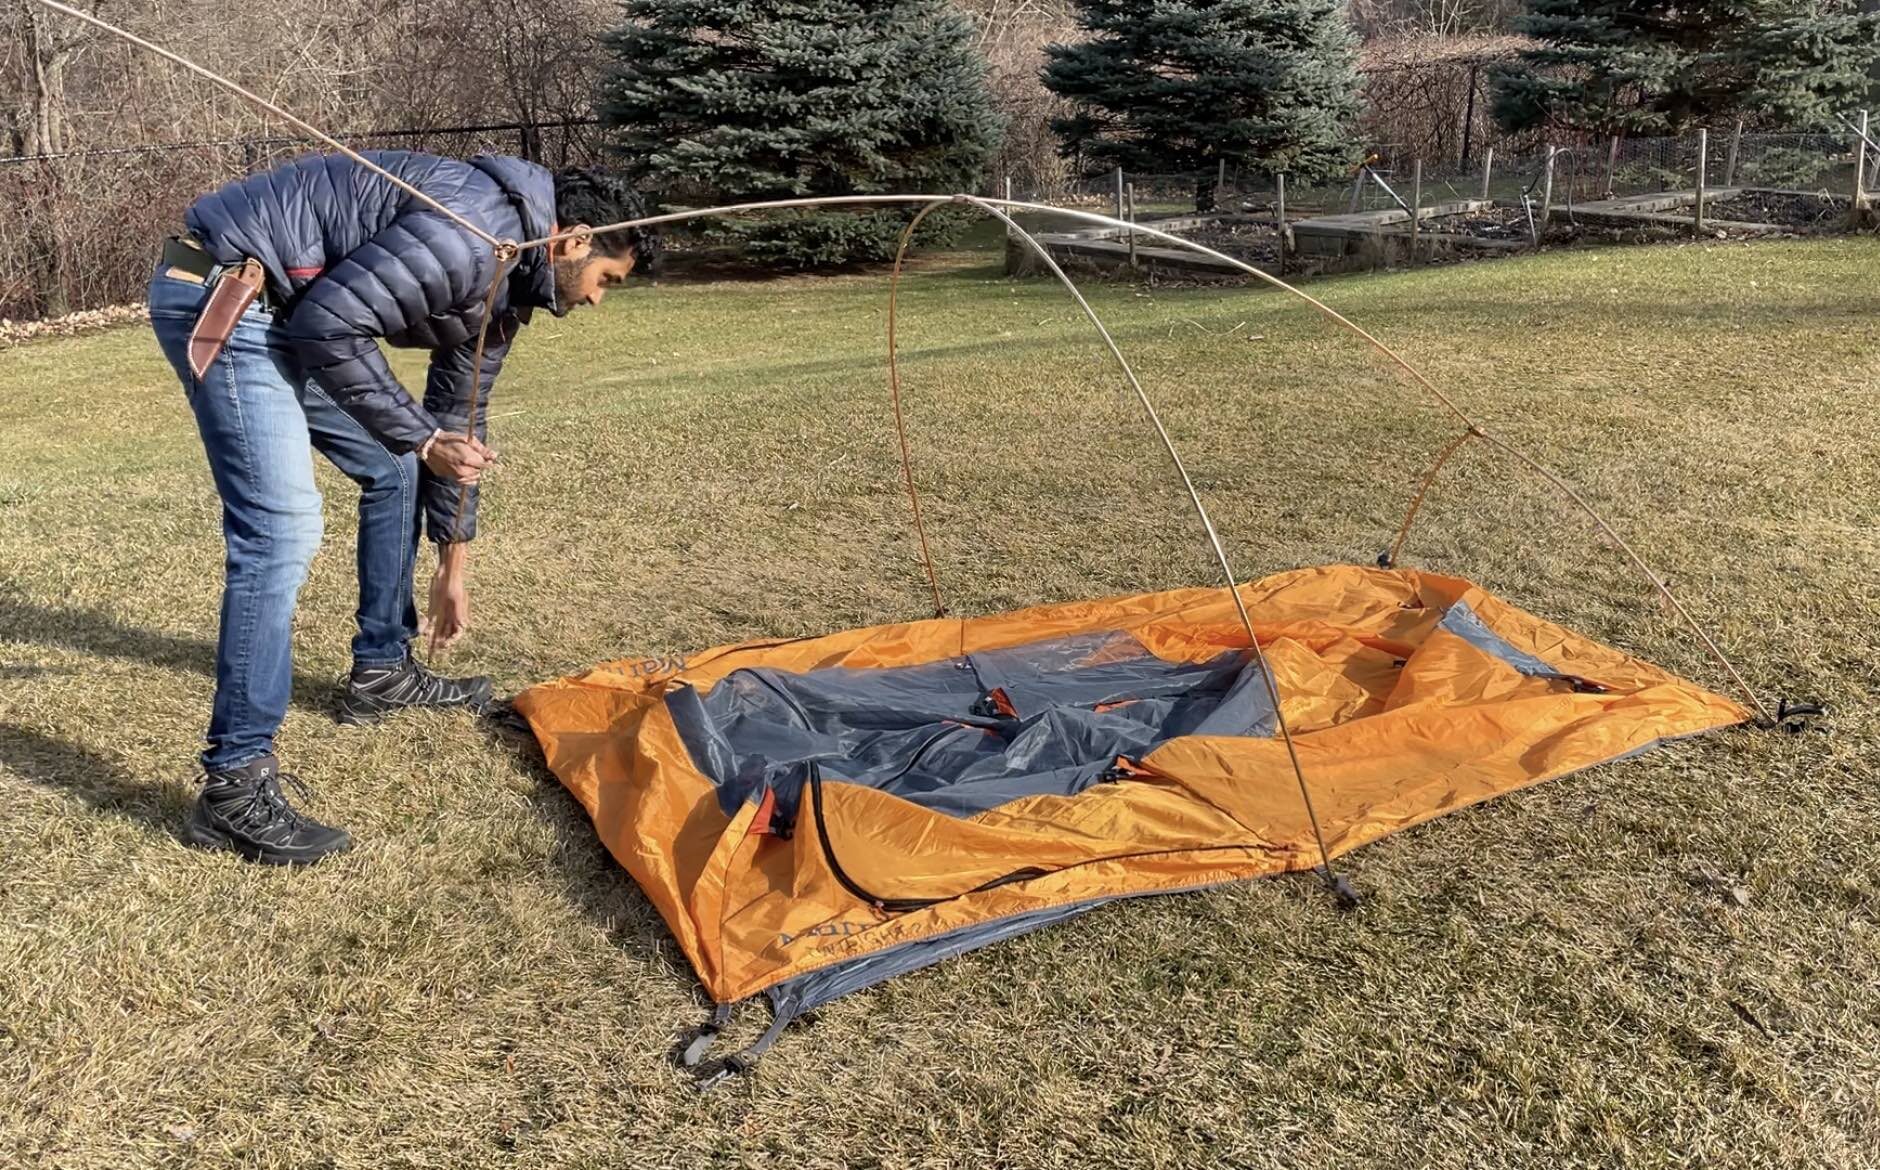 remove tent poles